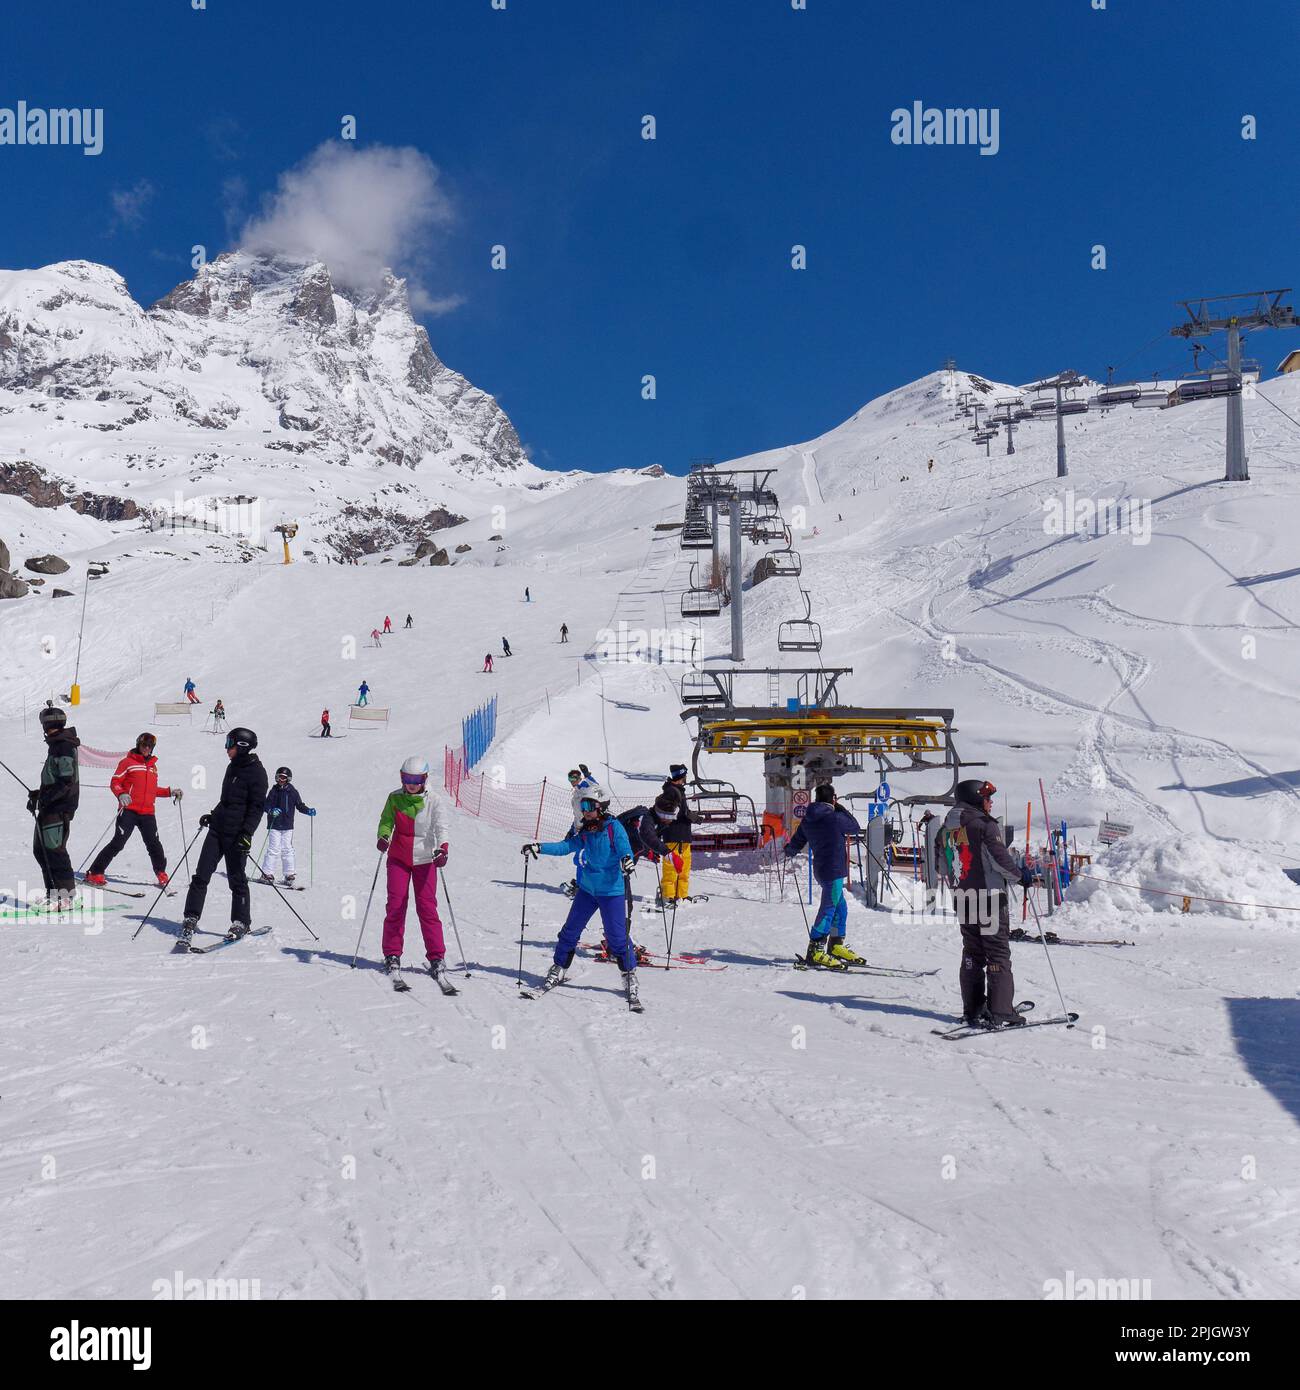 Skifahren im Ferienort Breuil-Cervinia im Aosta-Tal Italien mit einem Sessellift und dem schneebedeckten Cervino Berg, auch bekannt als Matterhorn, dahinter. Stockfoto